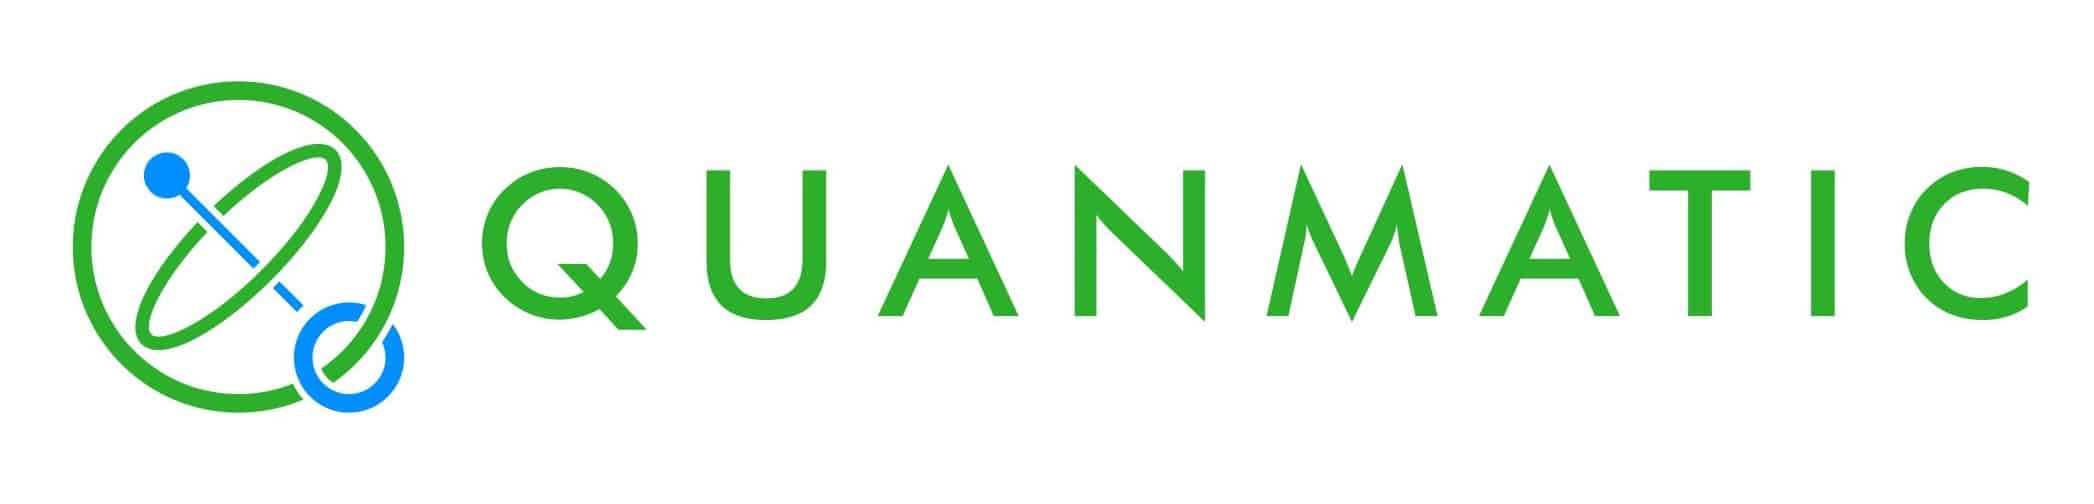 Quanmatic, Inc. / 株式会社Quanmatic